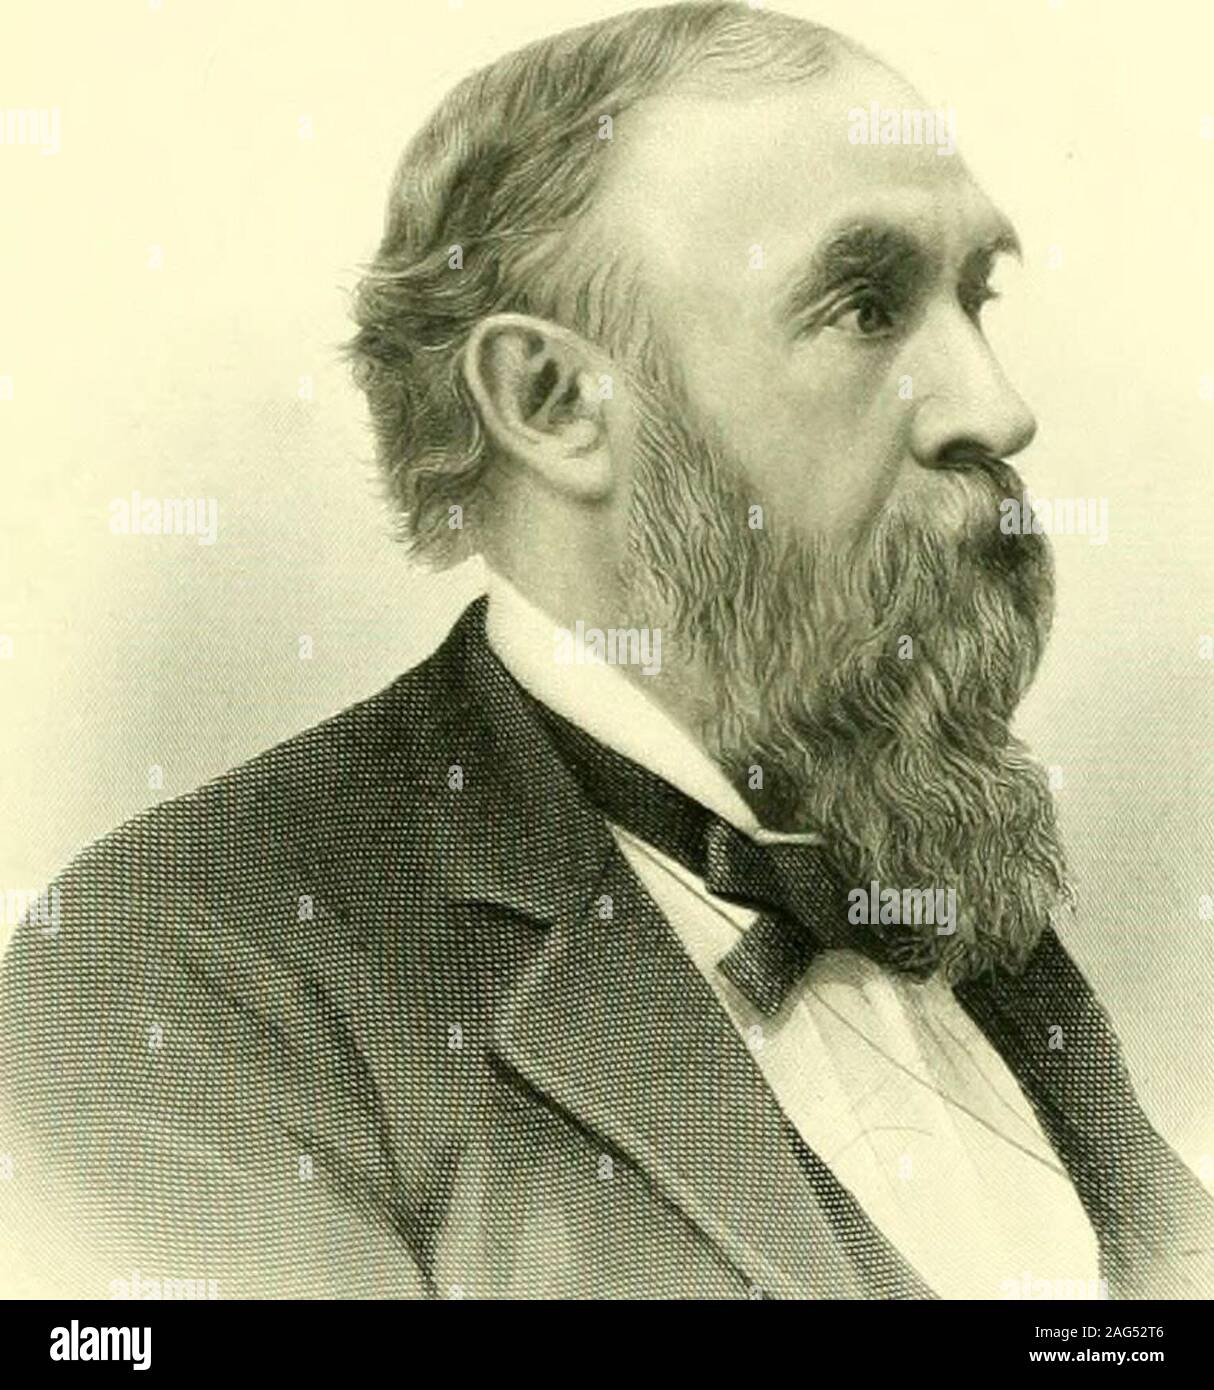 . Die Geschichte und die Genealogien der alten Windsor, Connecticut:. b. 6. Mai, 1871; d. li Juni, 1872. Minn. und (IST 91 ICH DIE | H-™ liarly sneeessful Mann -, 4. Margery, b., 27. Sept., 1879. V.M. 4. George Griswold (lieut.-reg.) (i/m)^, "JbAn, JoAn, * Jude., CViyrf. Jiw., Juhii^), war Educ.at Ell. Acad., und bereit für Hochschule durch private Nachhilfe; Grad.A.B. Yale, Slg. 1852; Vorlesungen für eine yetir in Yale Law School, und Nach-Stationen wurde Schüler im Gesetz - ollice der späten Reg. Reich. D. Hubbard atHartford; war Adm. An der Bar. 1854, und seitdem in der activepractice Seiner professi fortgesetzt Stockfoto